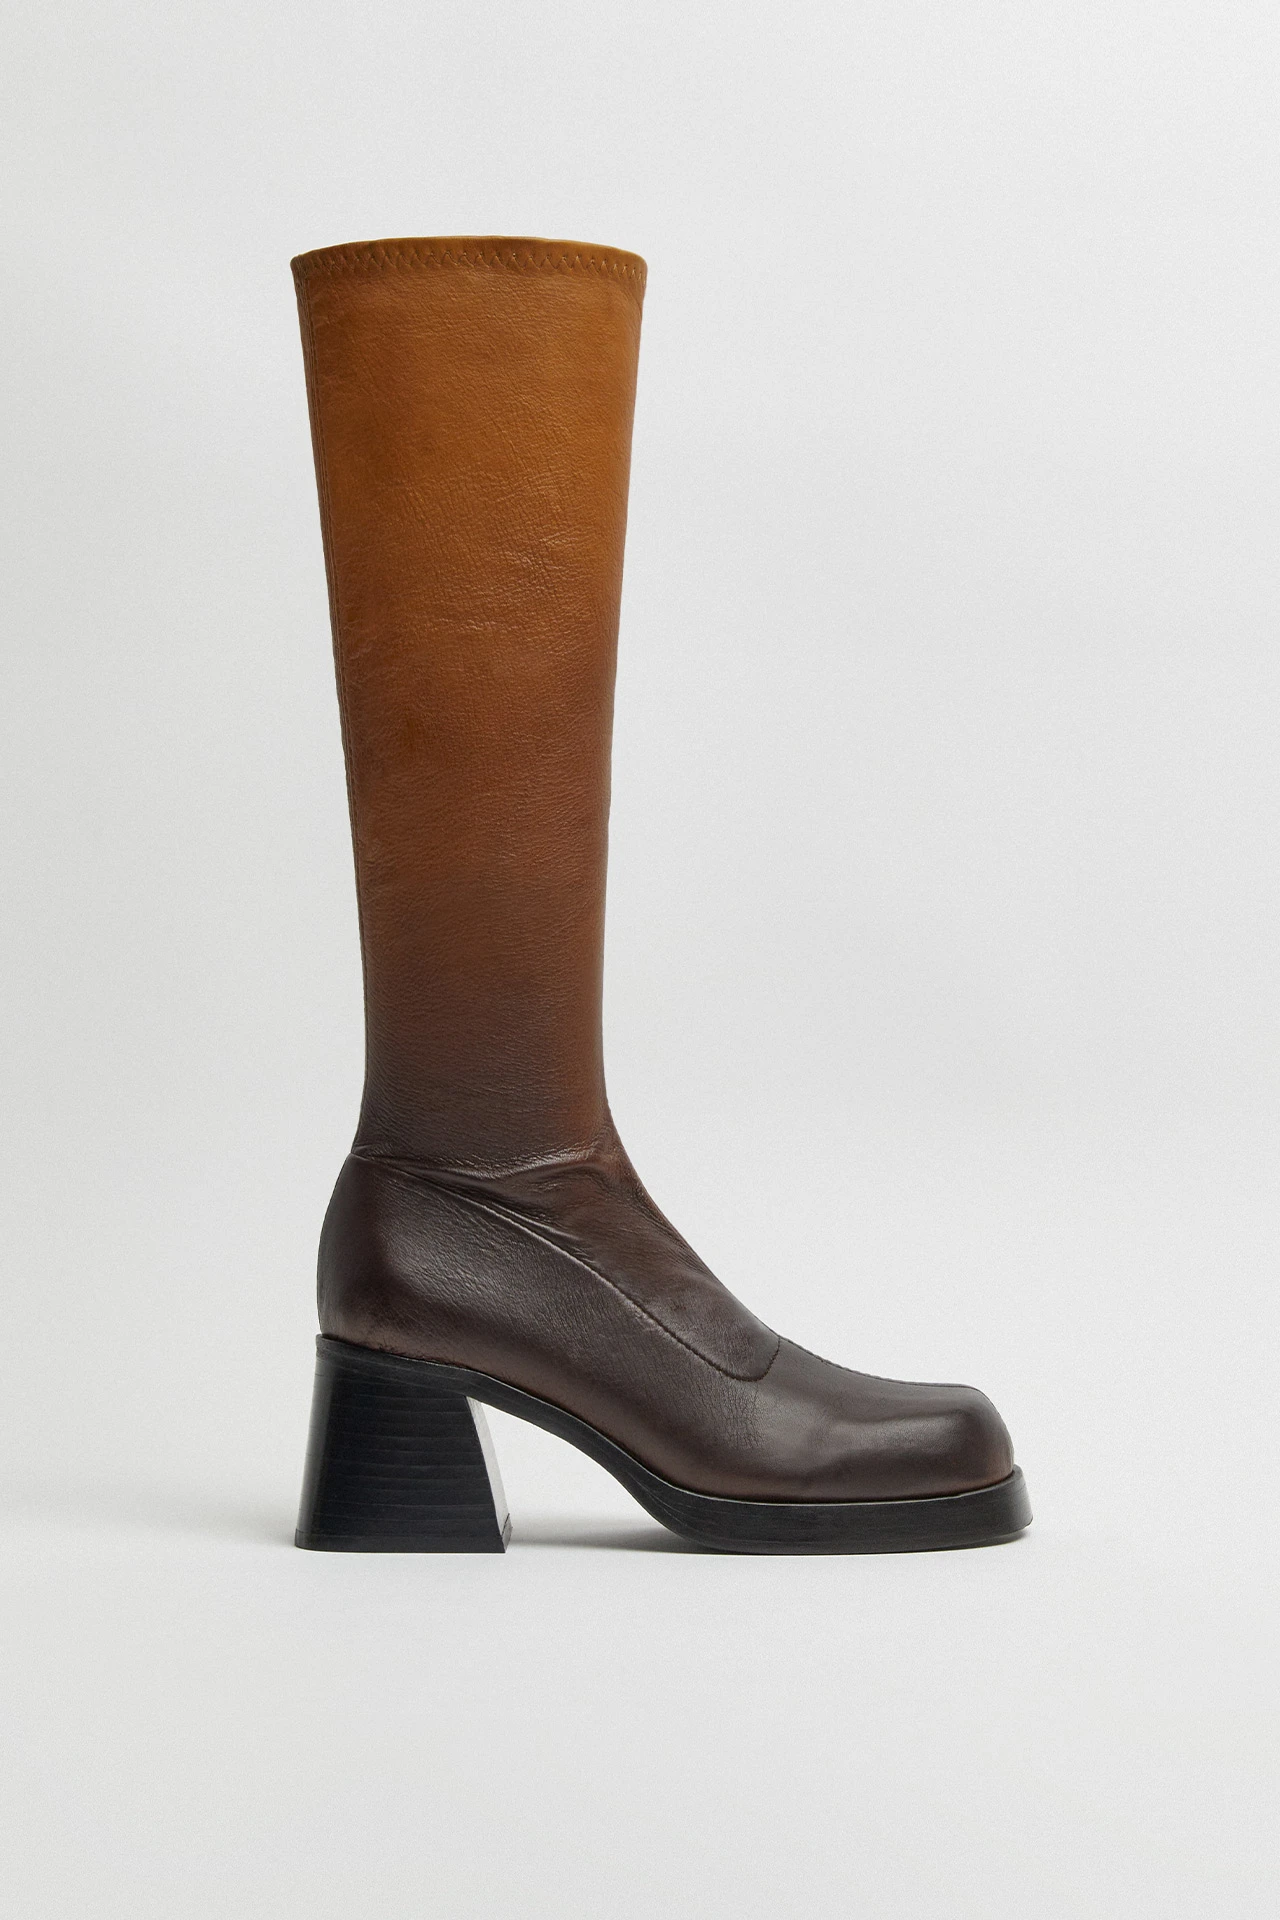 Miista-hedy-brown-degrade-tall-boots-01